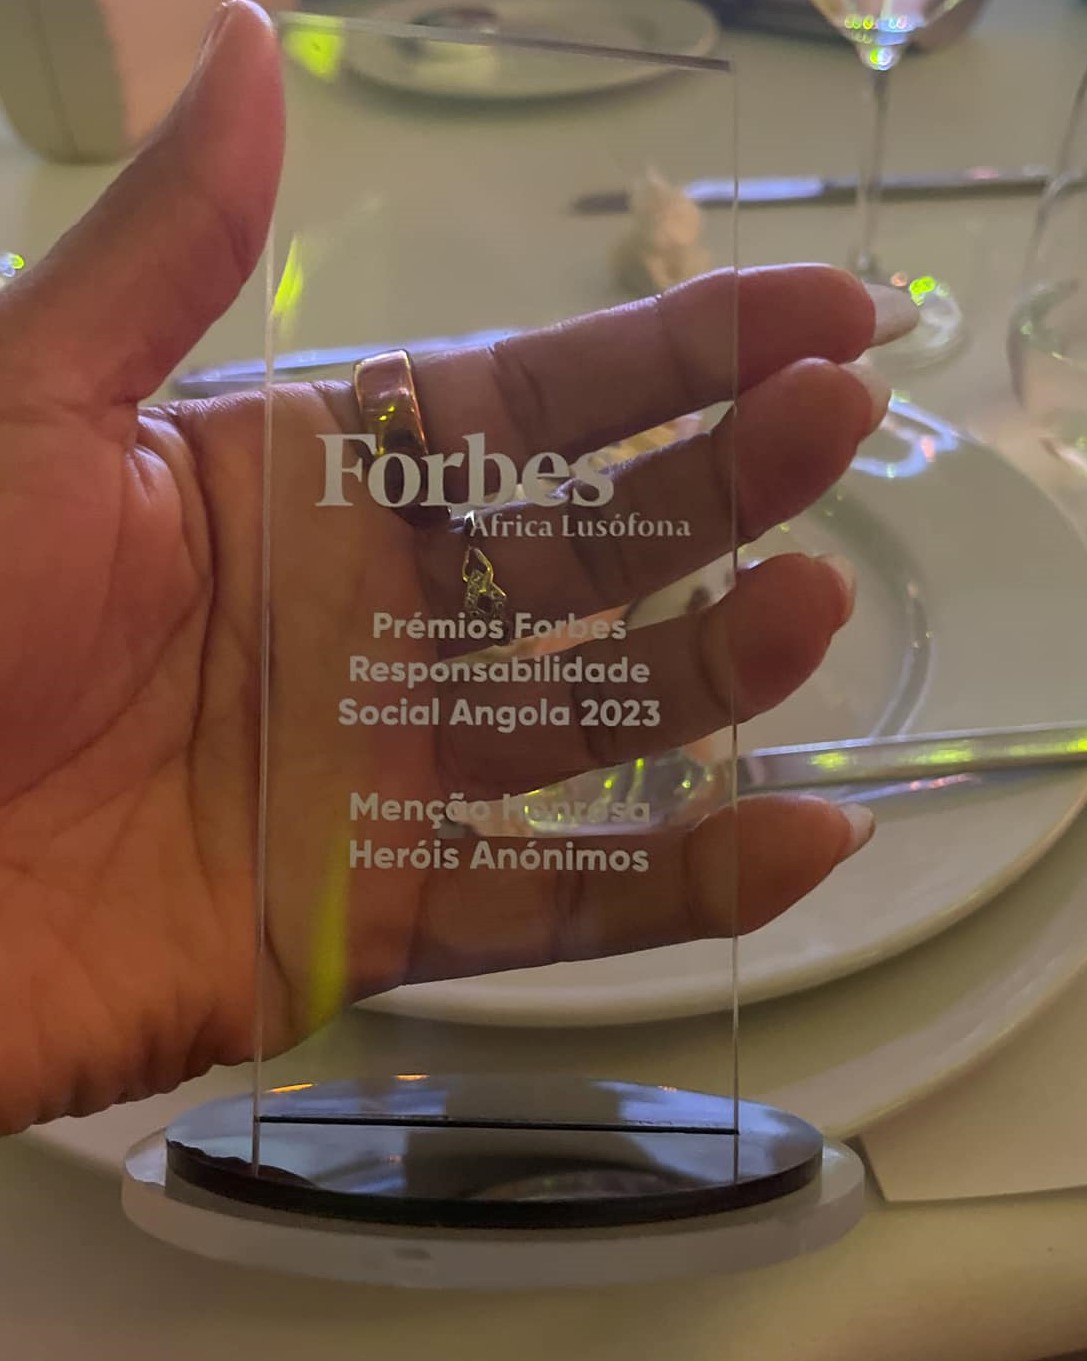 ANGOLA RESCUE premiada pela Forbes África Lusófona